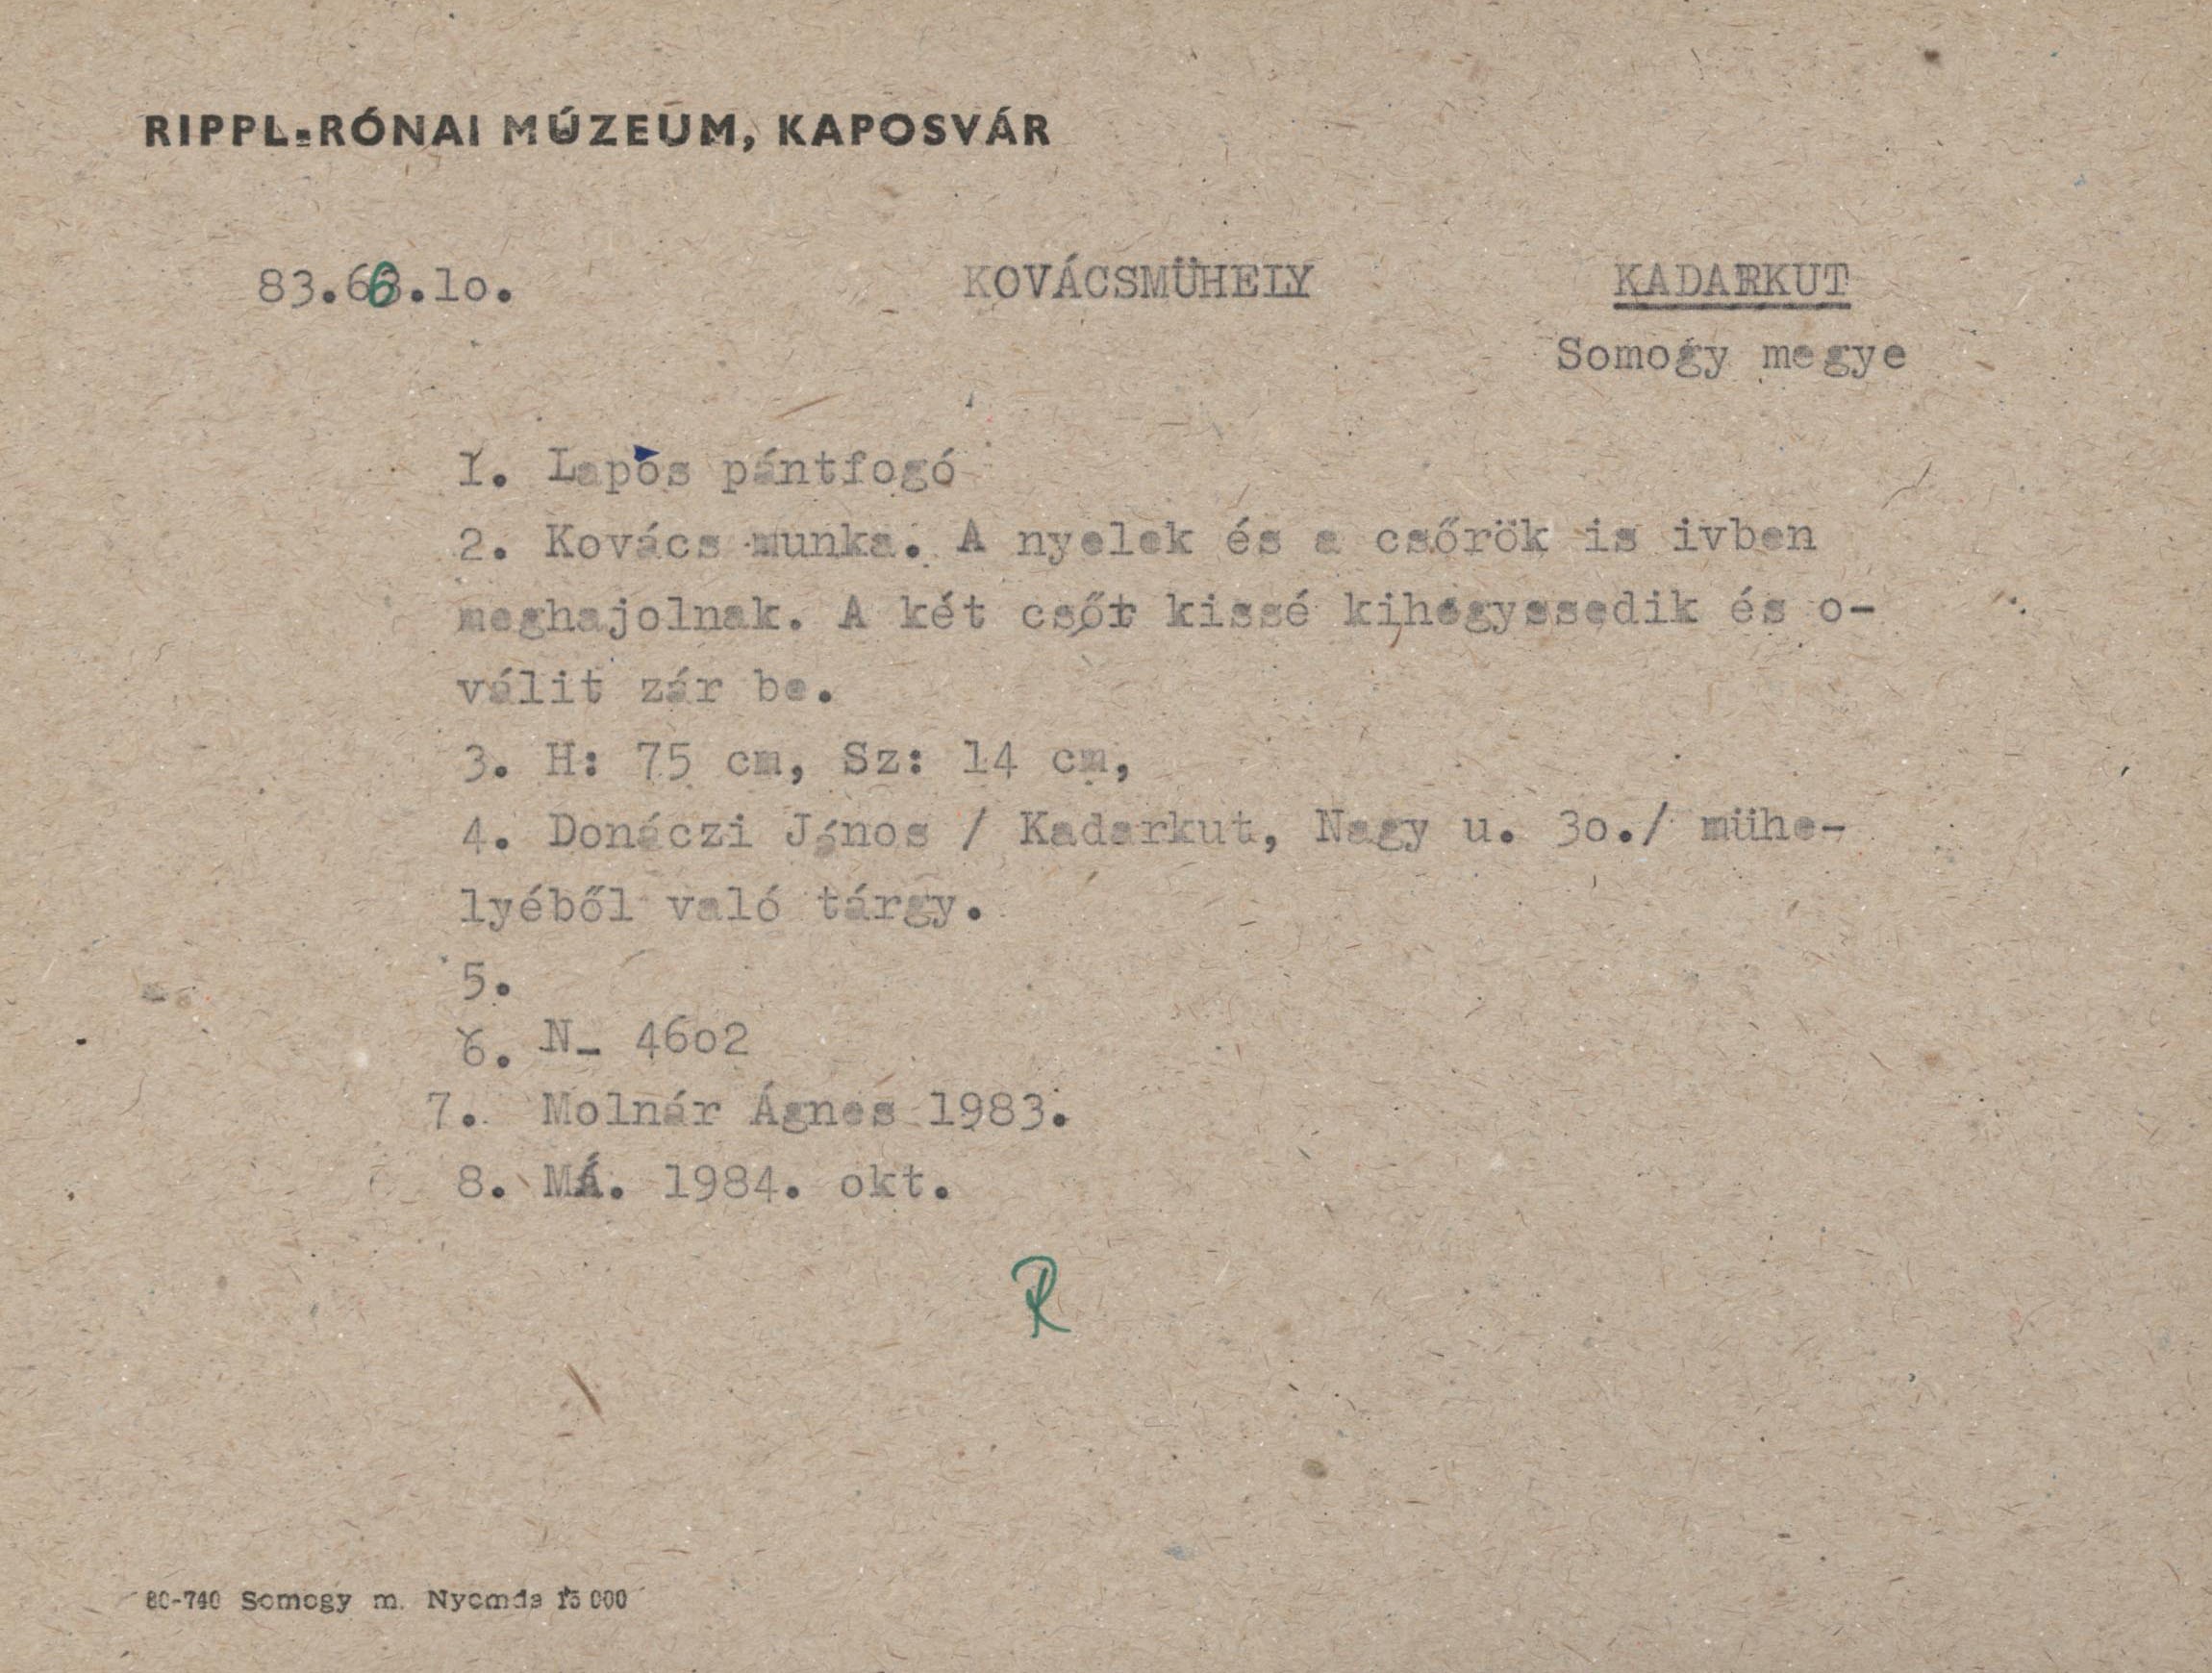 Lapos-pánt fogó (Rippl-Rónai Múzeum CC BY-NC-ND)